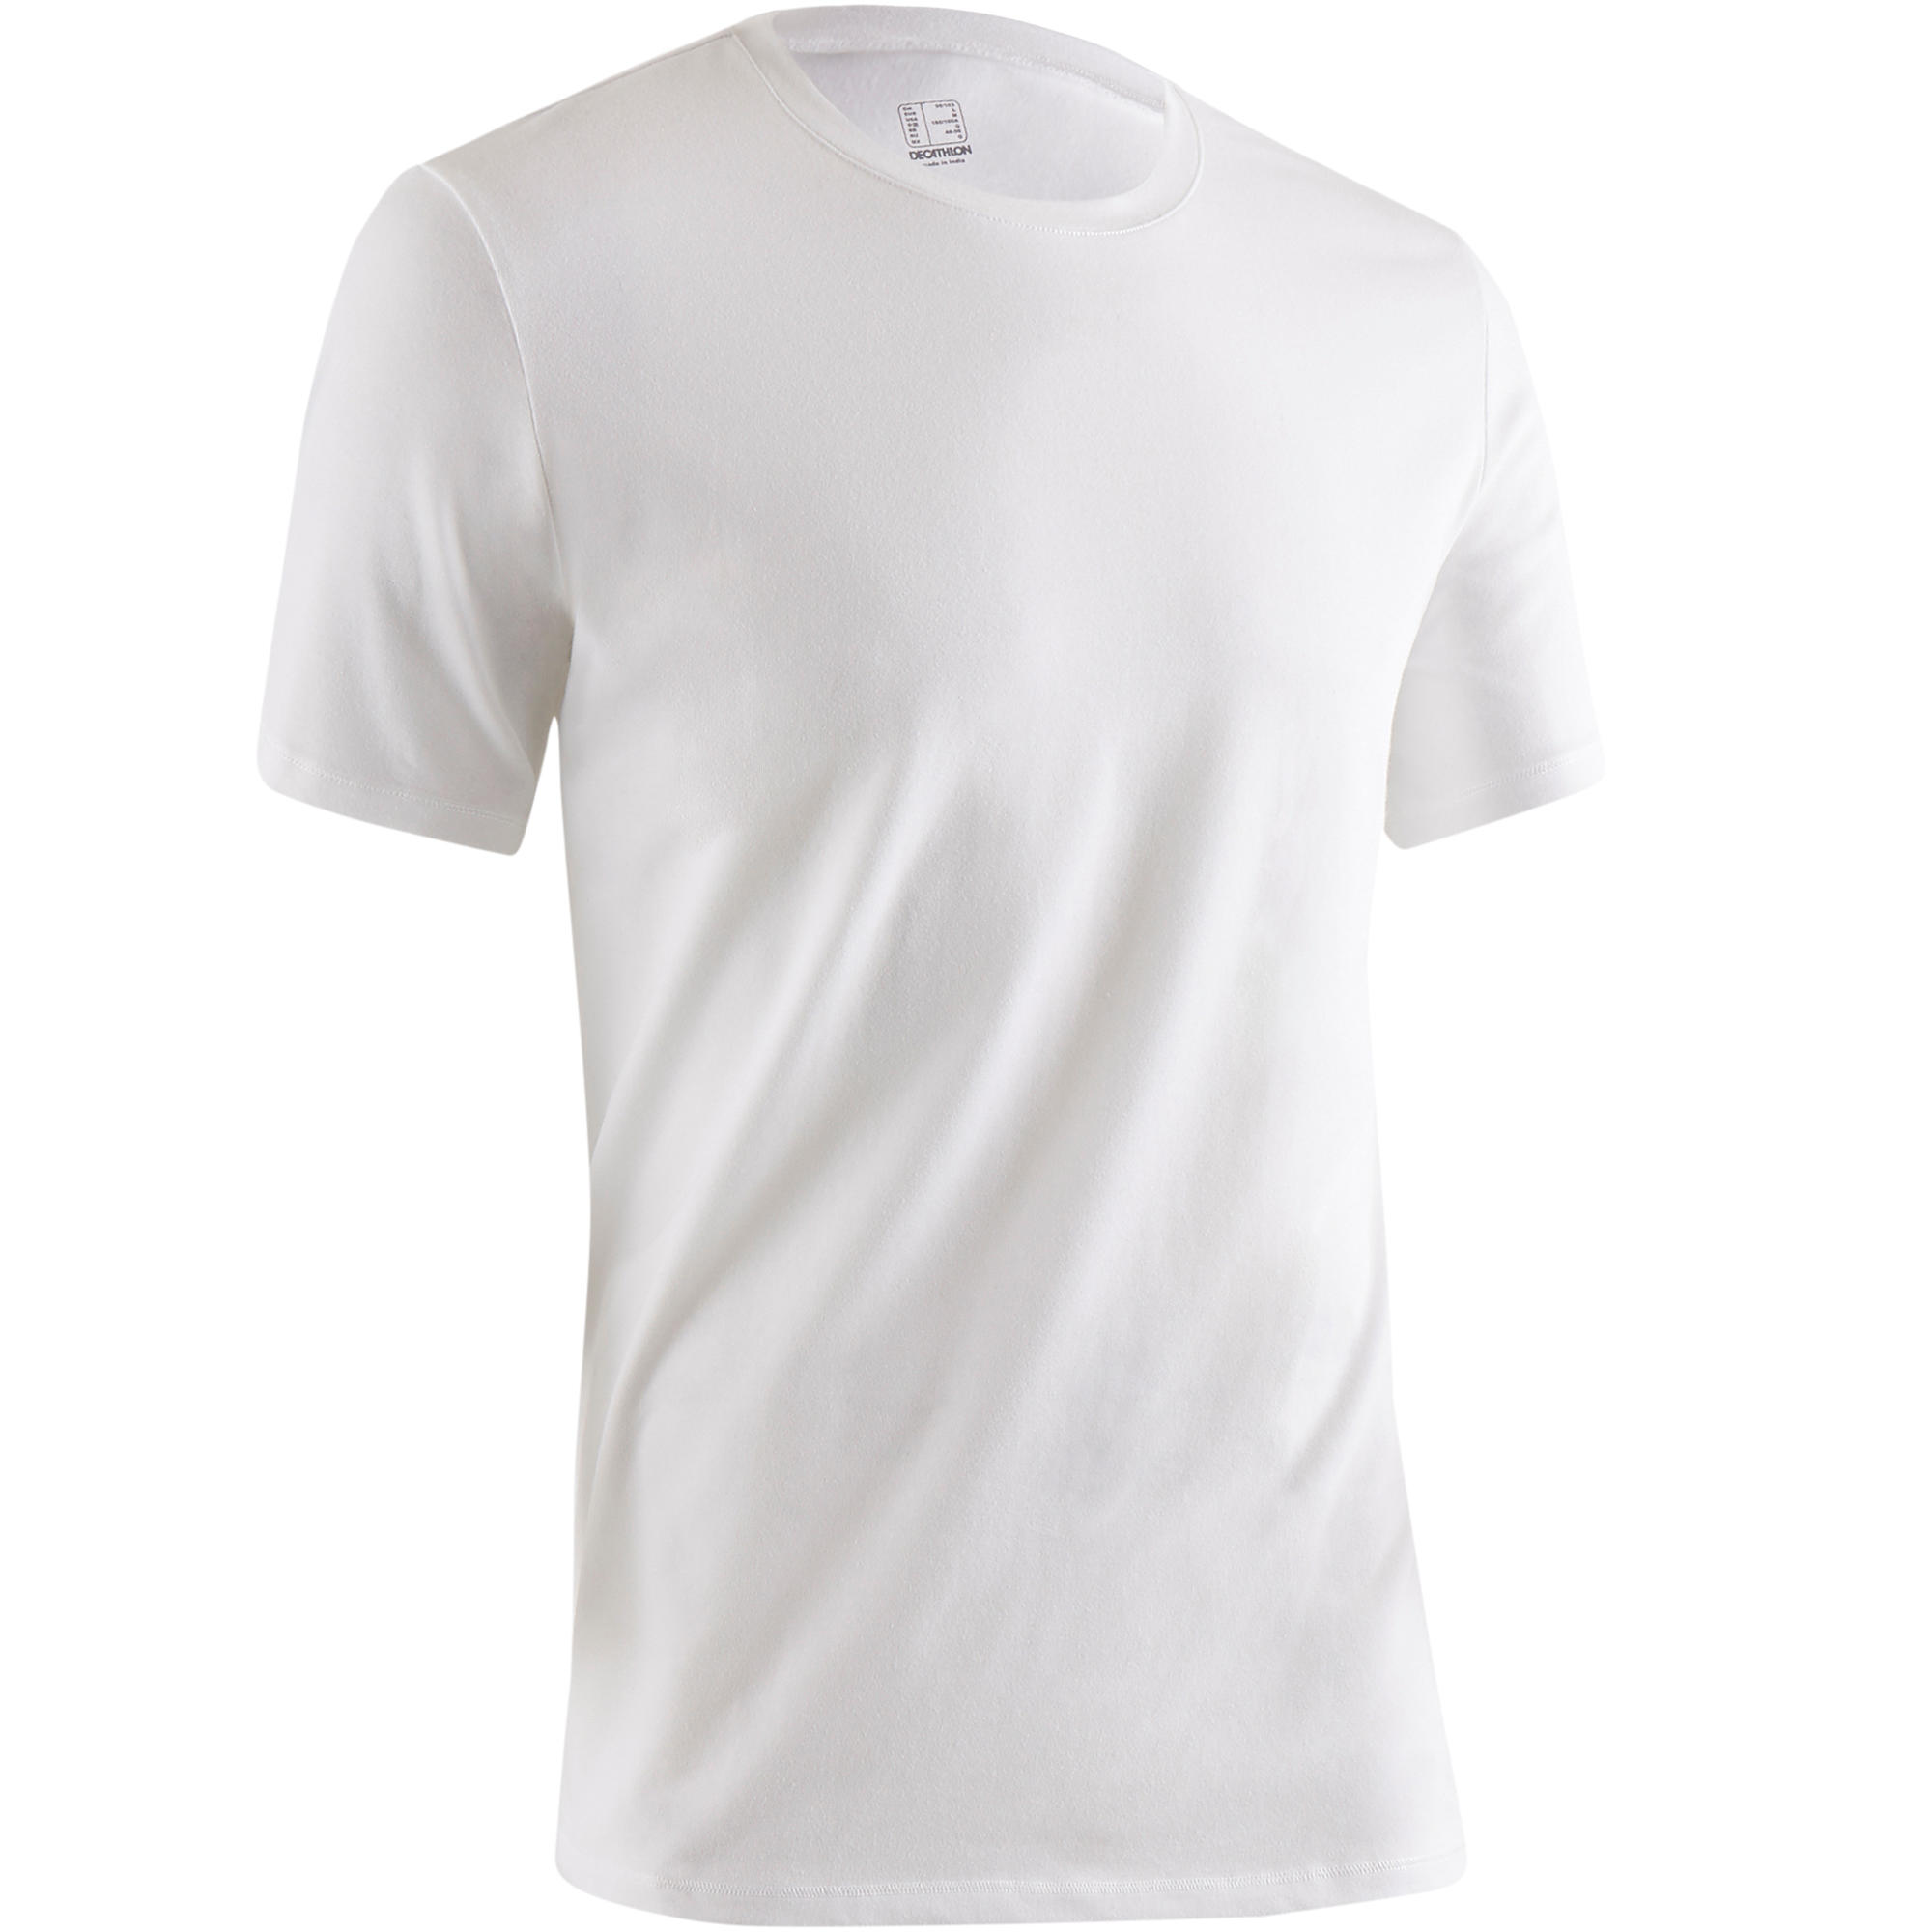 NYAMBA 500 Regular-Fit Pilates & Gentle Gym T-Shirt - White